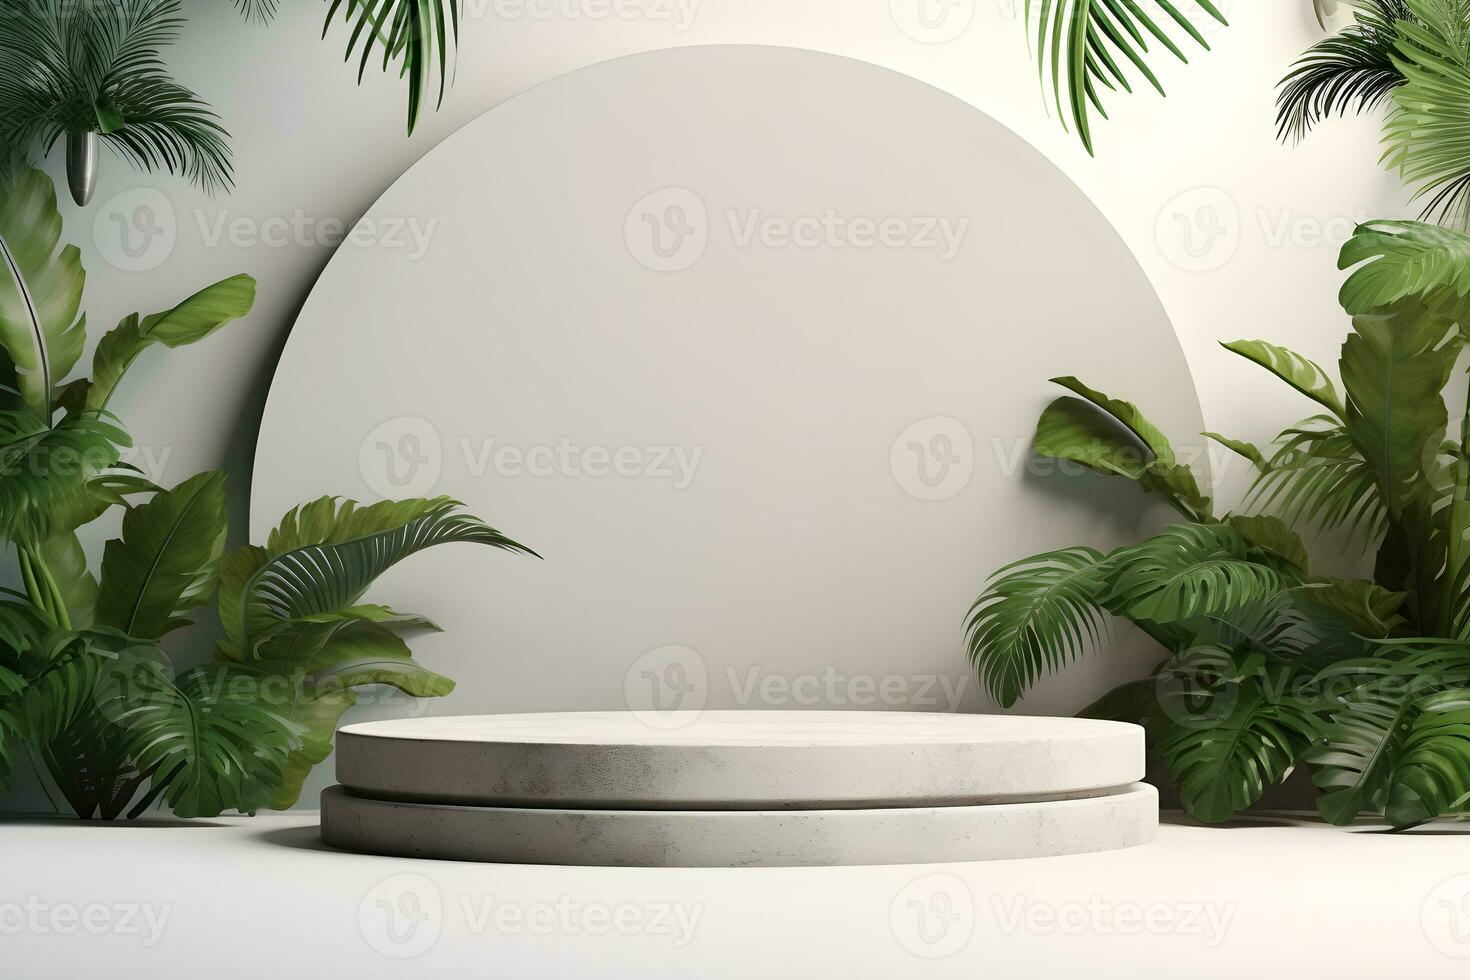 3d pierre podium Plate-forme dans tropical les plantes décoration, pour présentation afficher produits de beauté des produits l'image de marque, vide minimal étape identité et emballage conception, ai produire photo